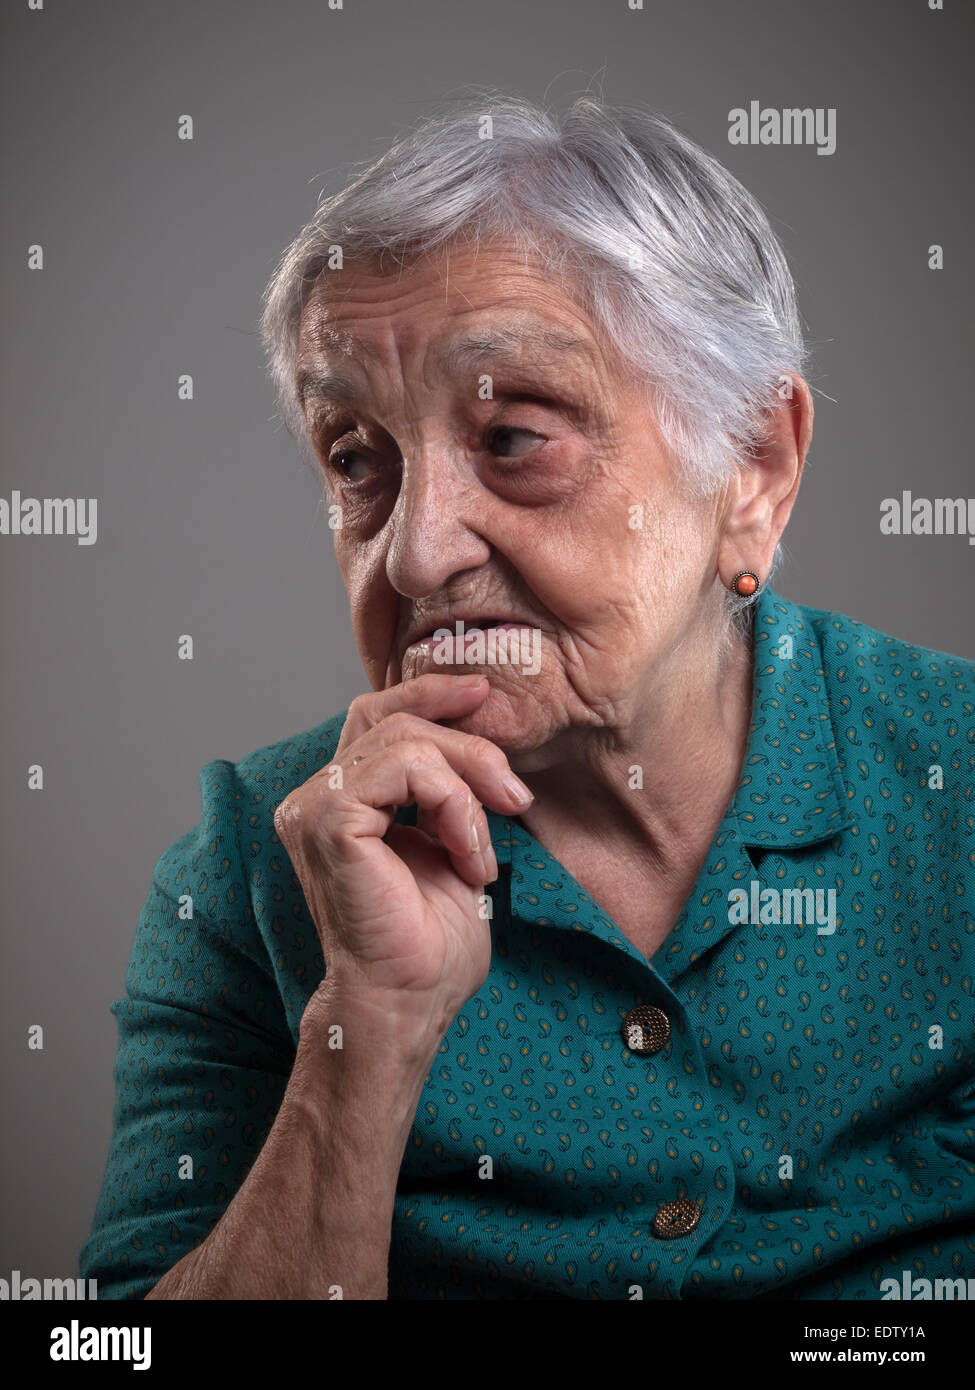 Donna anziana ritratto in uno studio shot. Il vecchio donna aveva la sua mano sul mento e sta cercando da parte. Foto Stock